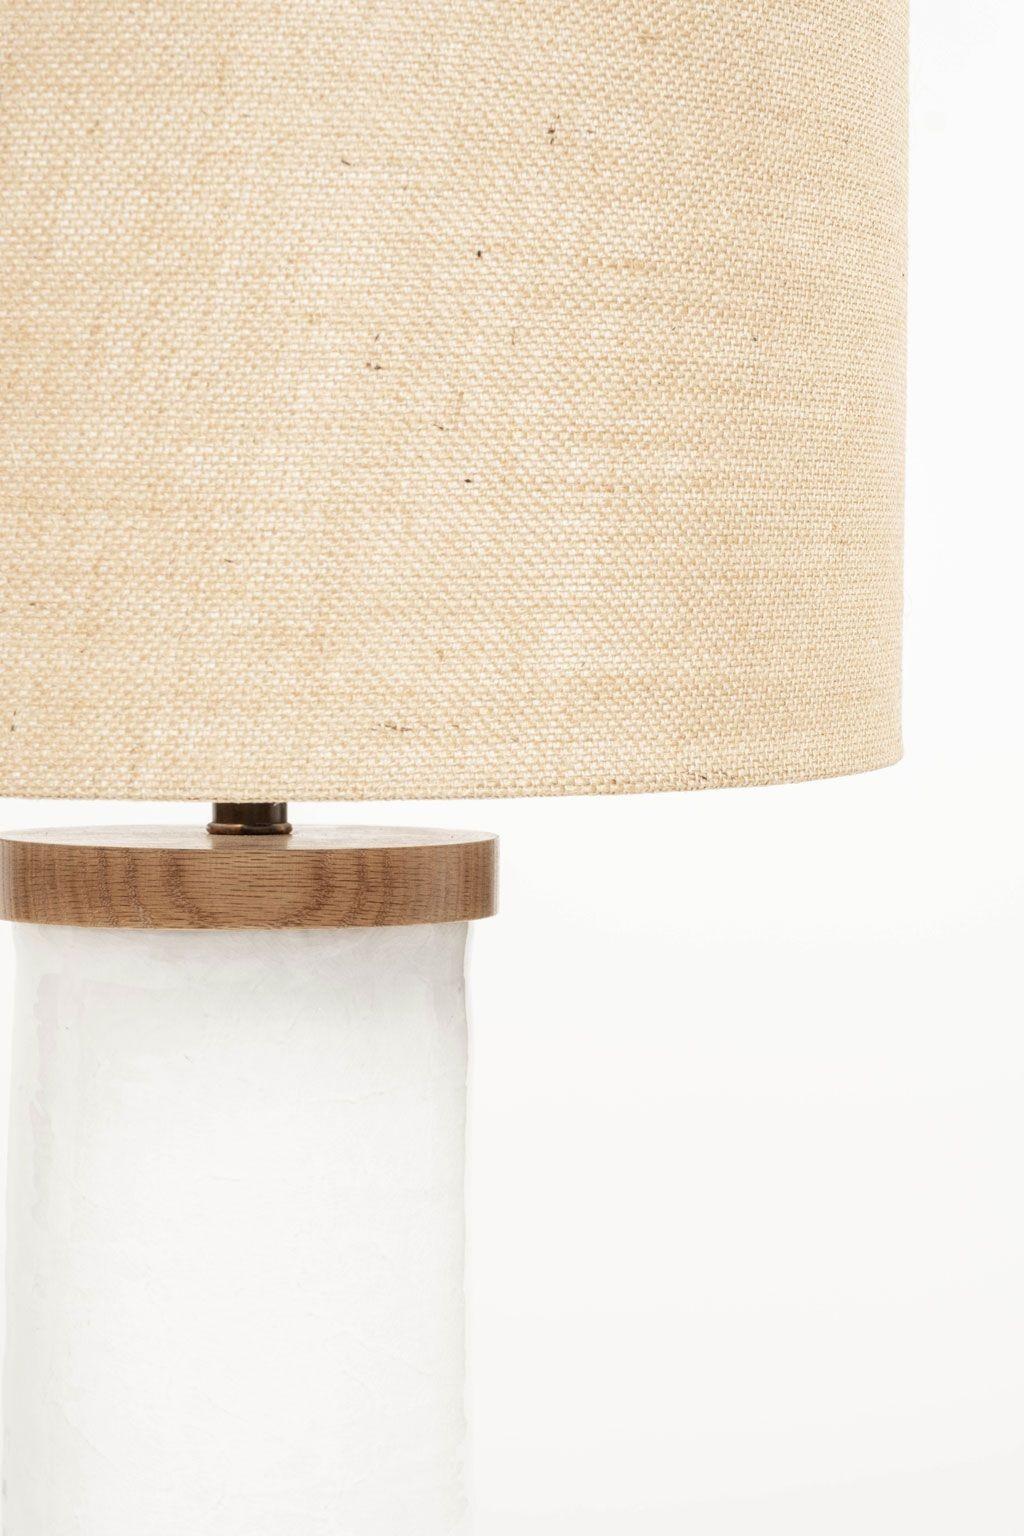 Lampe de table blanche en forme de cylindre, fabriquée sur mesure à partir d'un cylindre en céramique tourné à la main et finie avec une base et un plateau en bois. Nouvellement câblé pour une utilisation aux Etats-Unis en utilisant toutes les